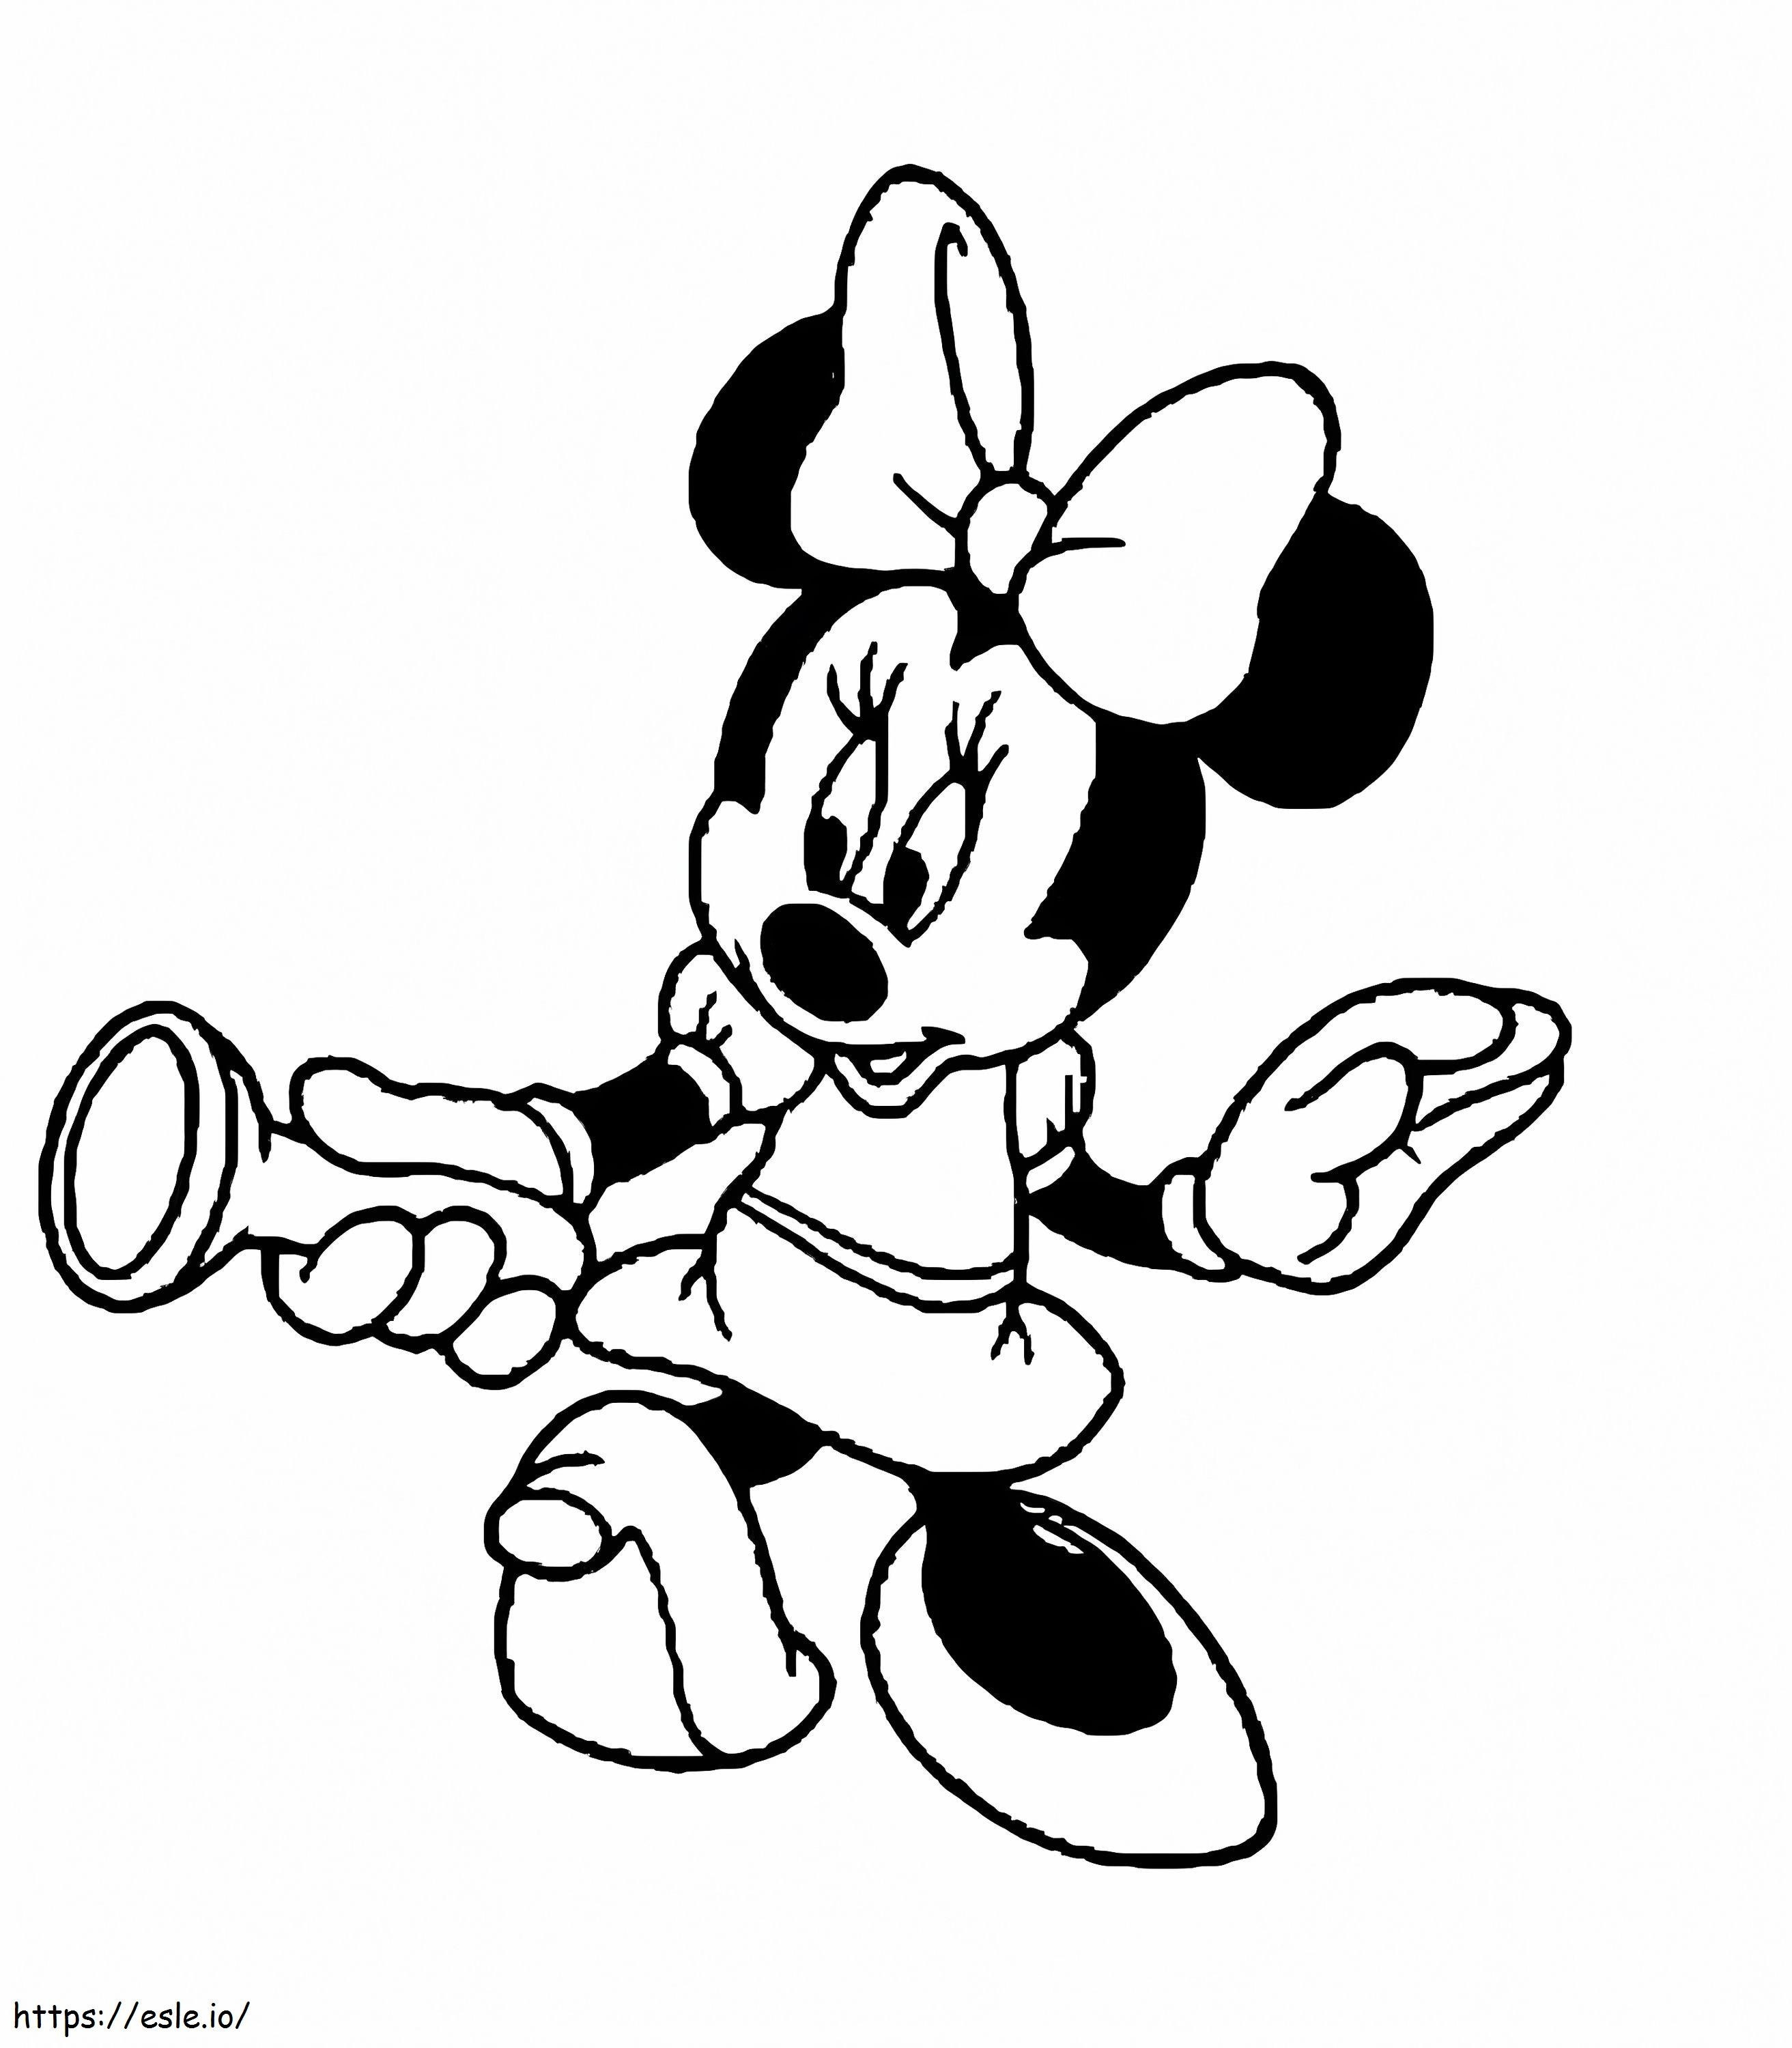 Coloriage Minnie Mouse 1 à imprimer dessin